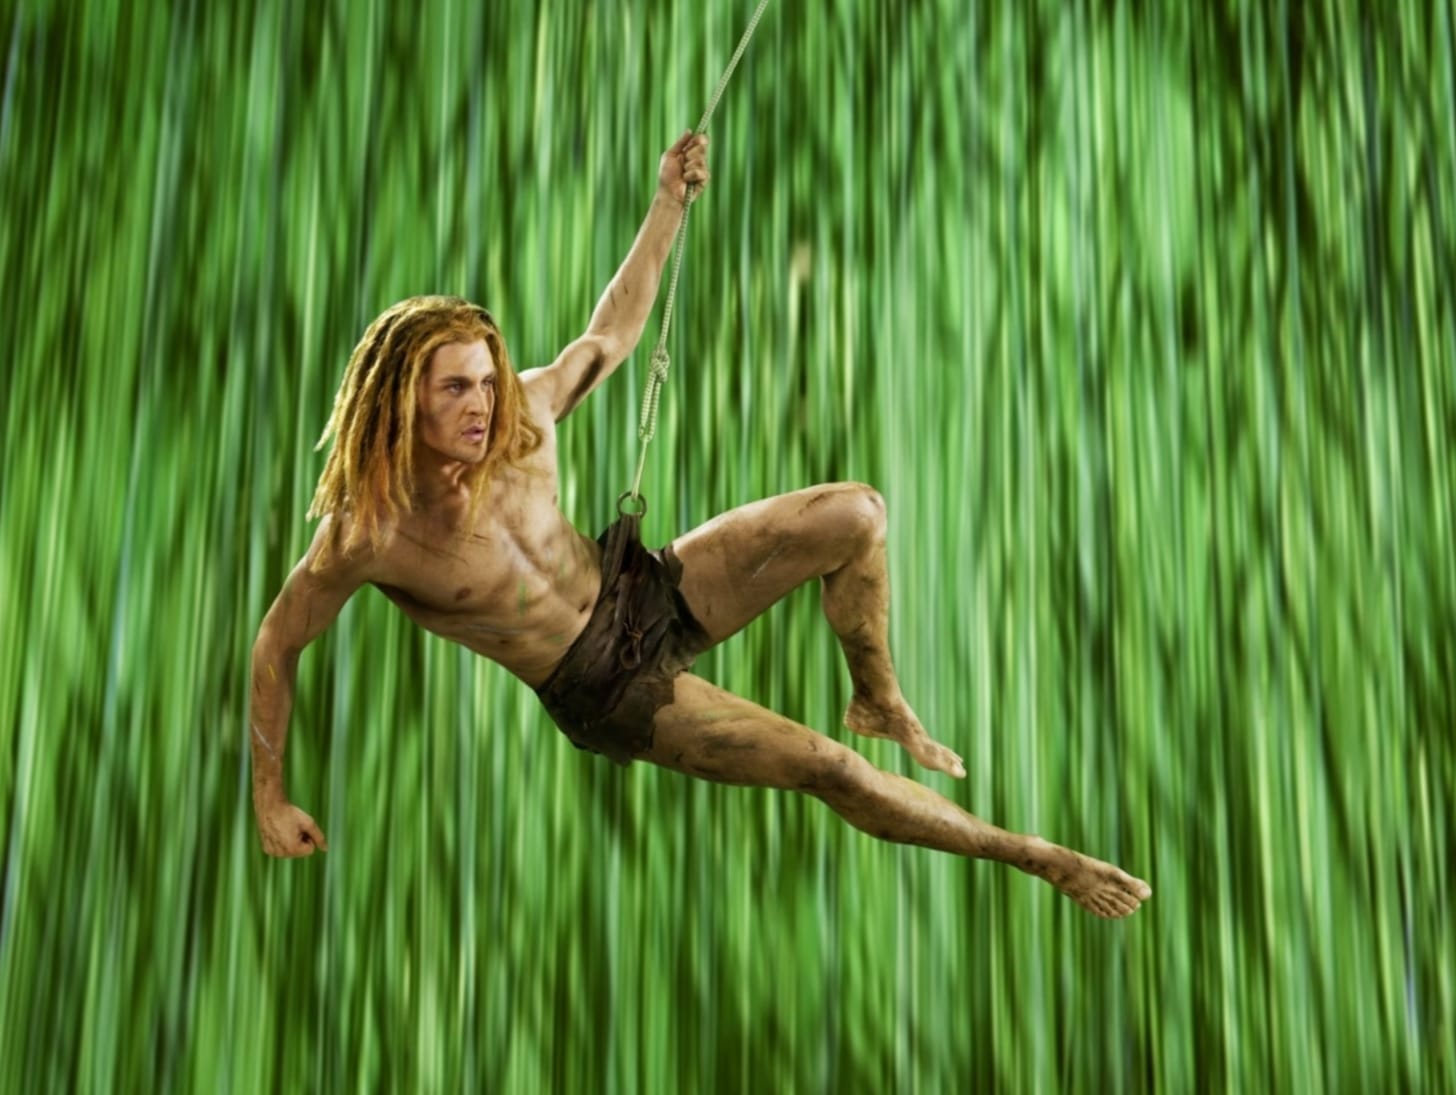 Von 2010 bis 2013 spielt Klaws den "Tarzan" im gleichnamigen Musical. Seine bislang wohl größte Rolle.